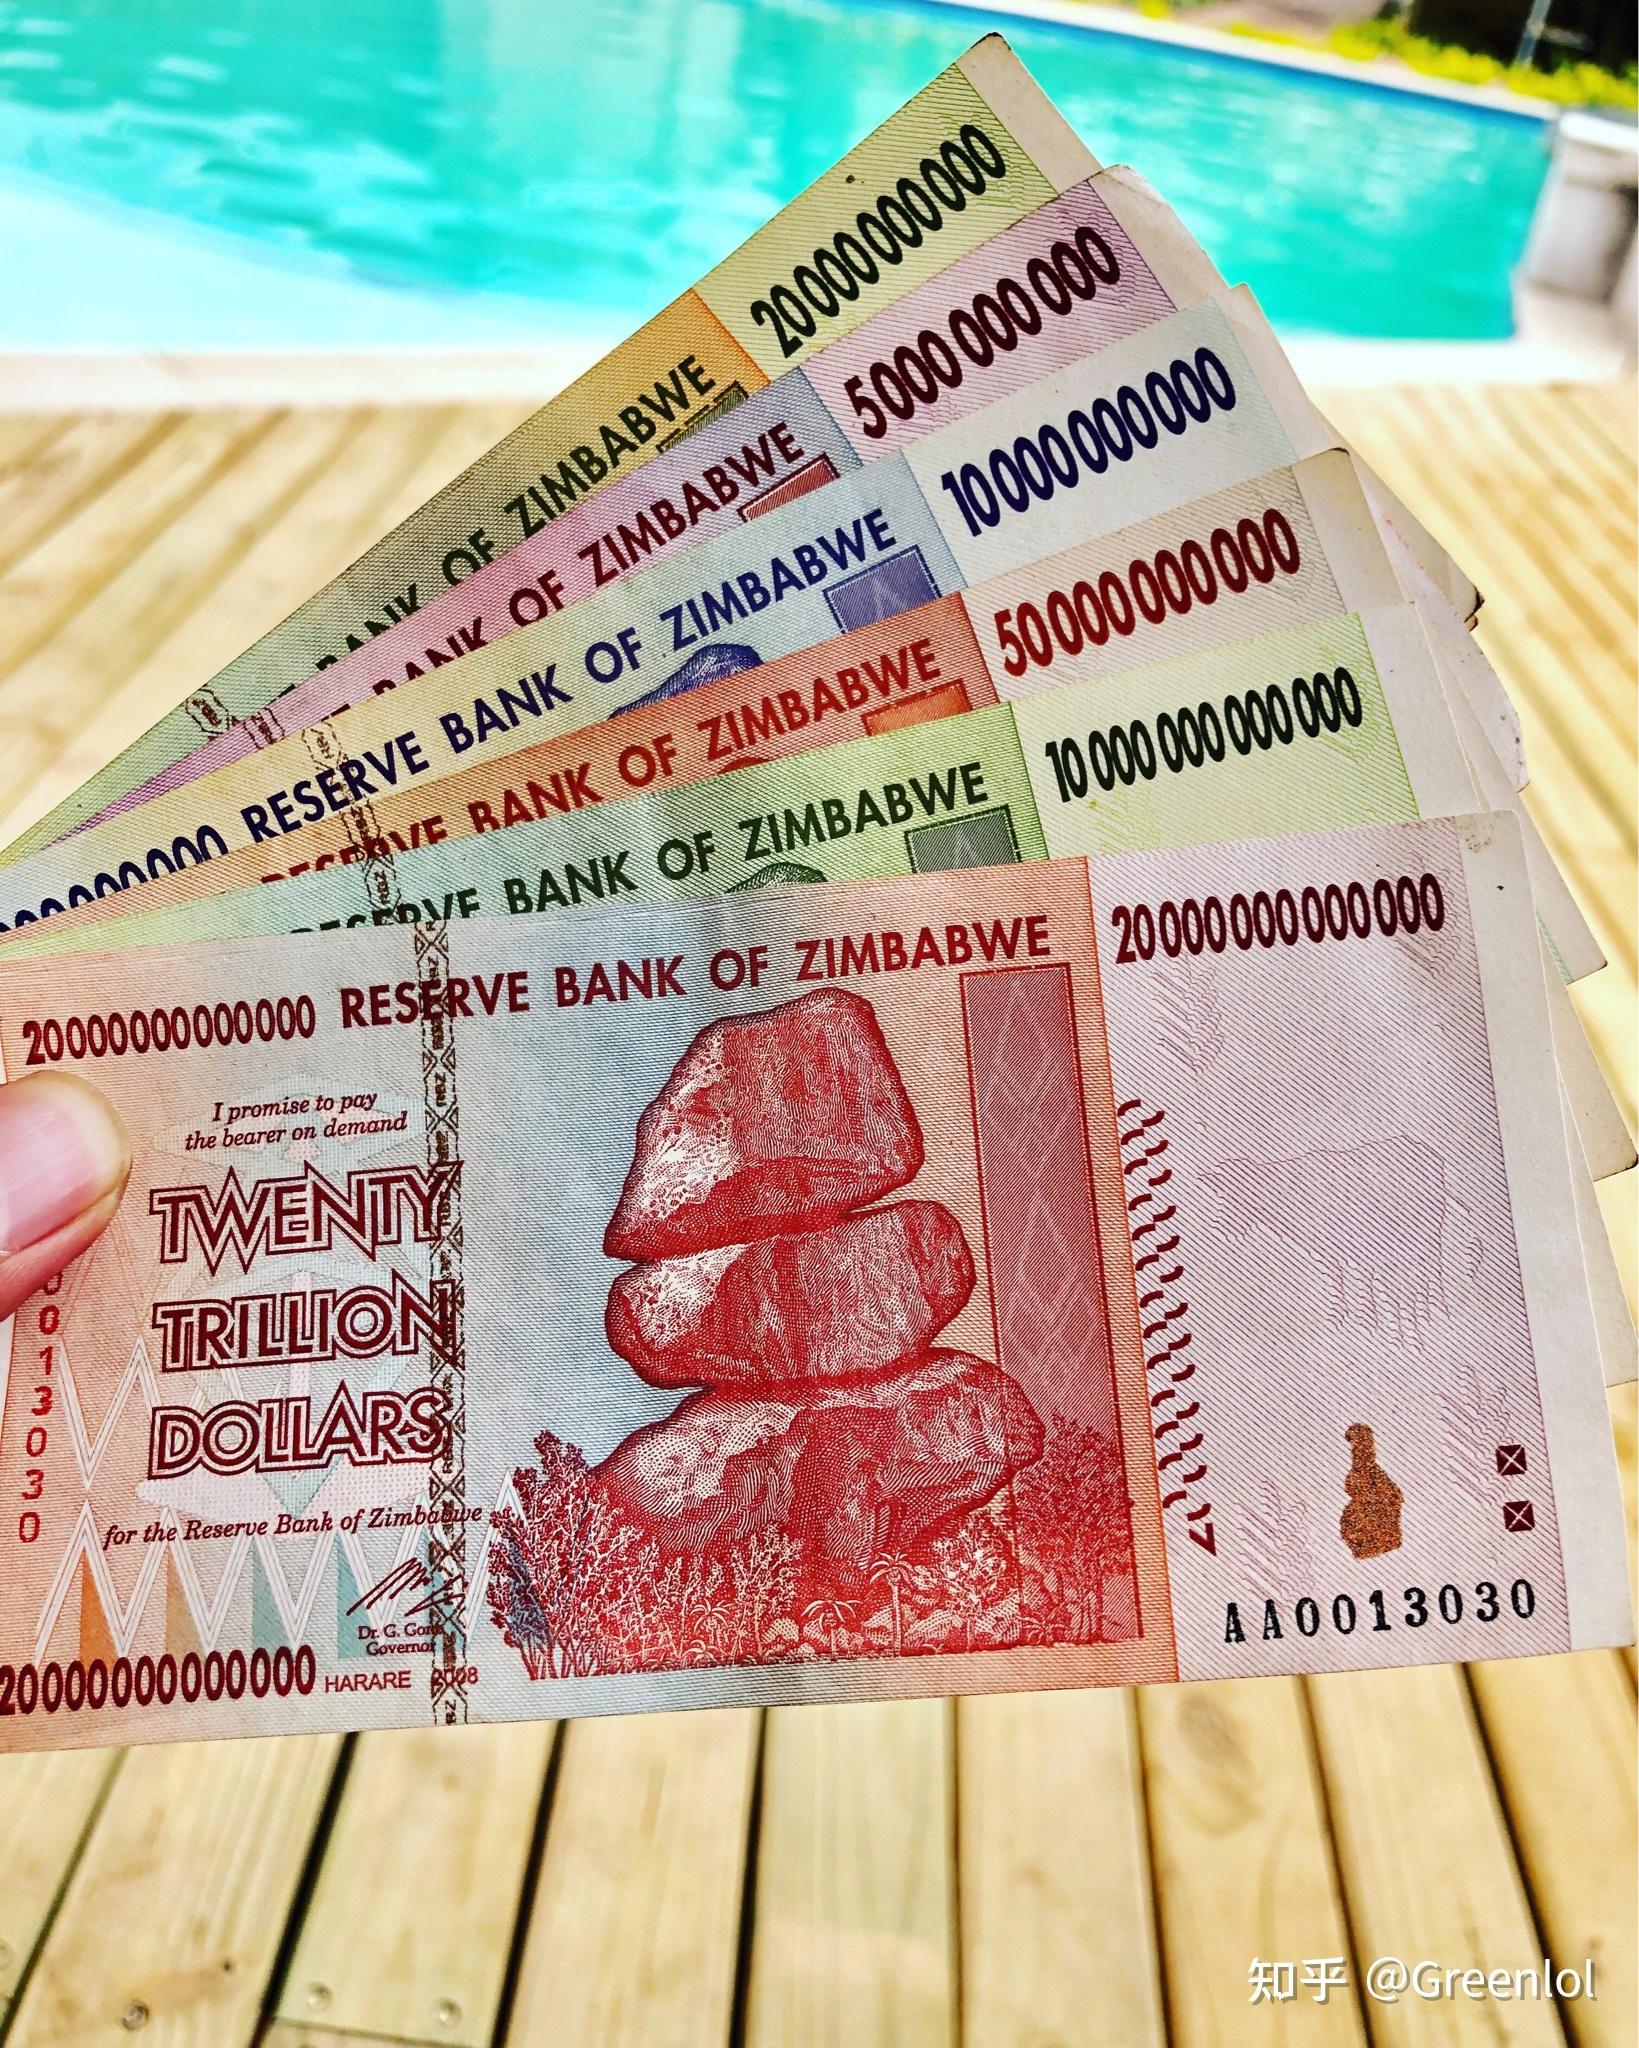 津巴布韦几百亿才相当于人民币几块钱,那么问题来了,他们怎么找零?